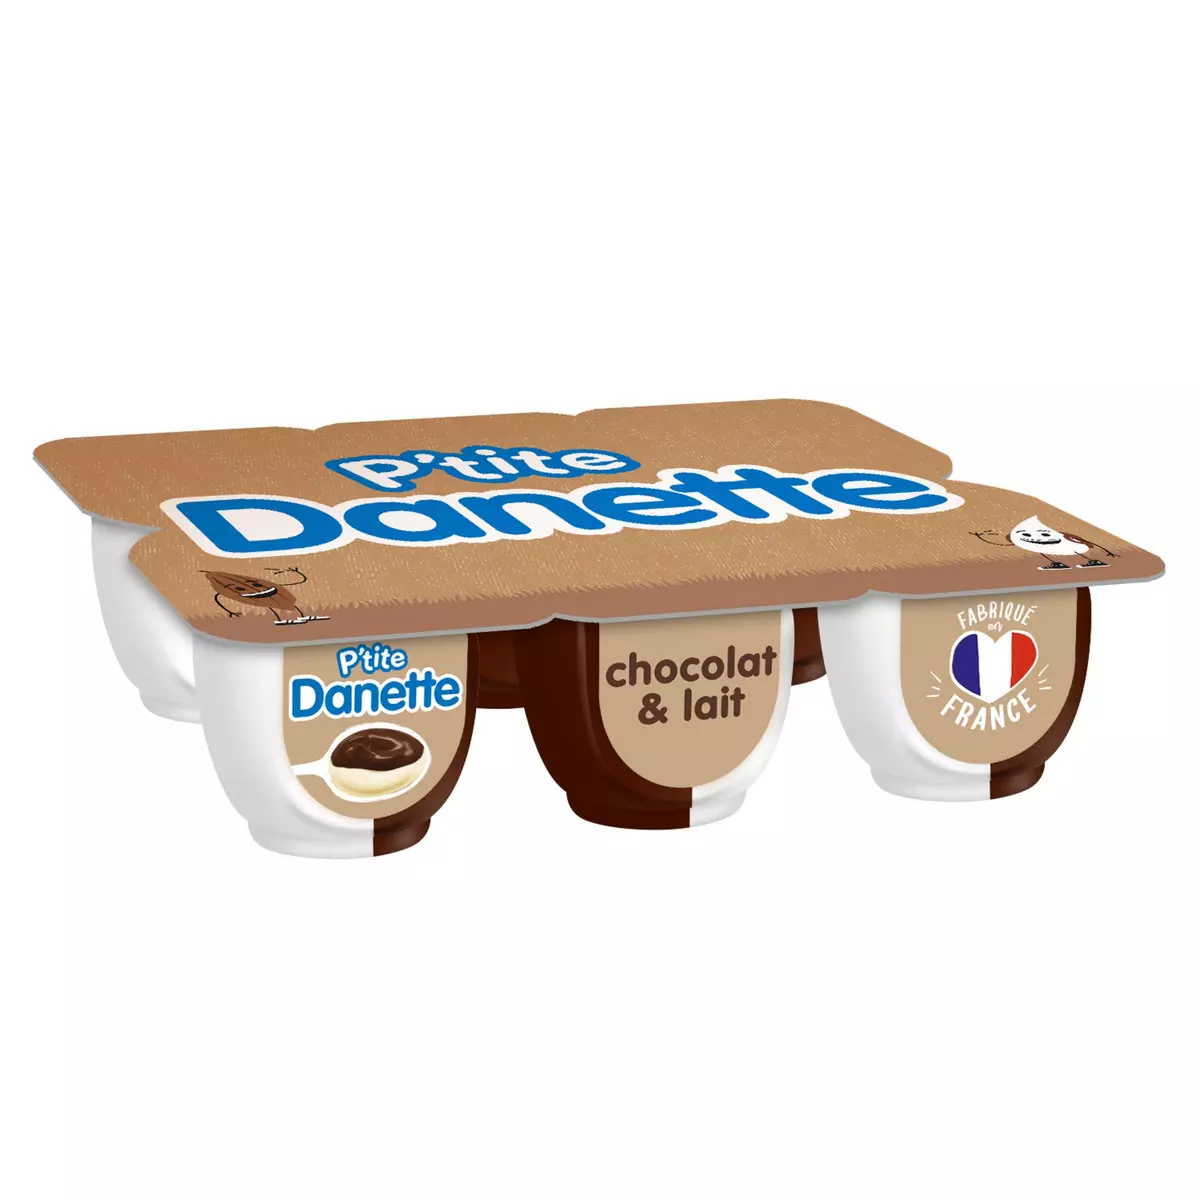 DANETTE Doubles saveur - Crème dessert chocolat et lait 6x70g